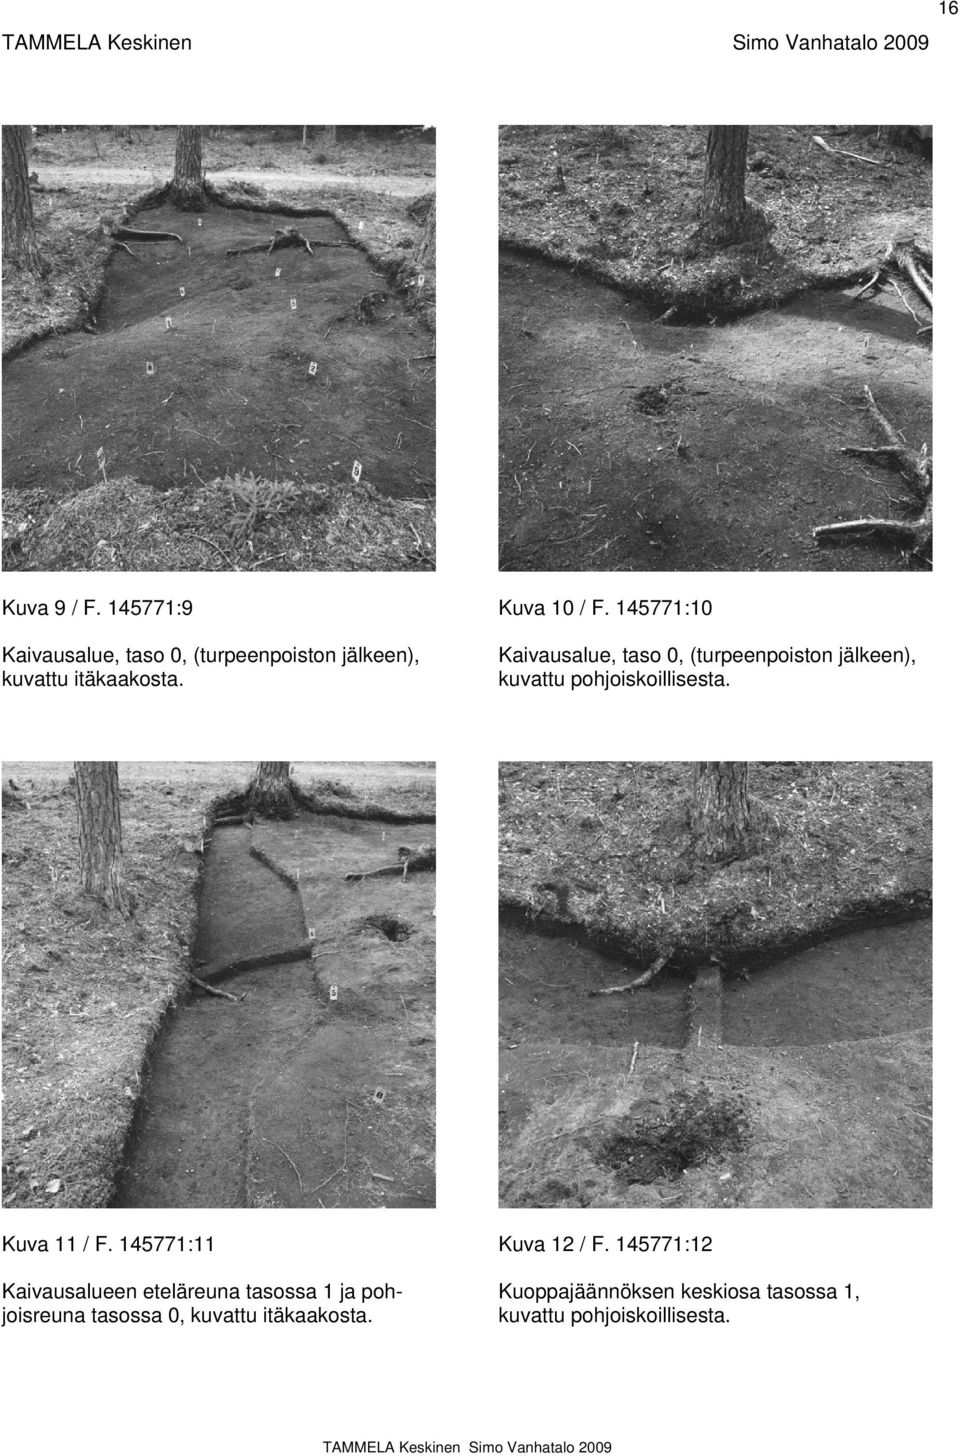 Kaivausalue, taso 0, (turpeenpoiston jälkeen), kuvattu pohjoiskoillisesta. Kuva 11 / F.